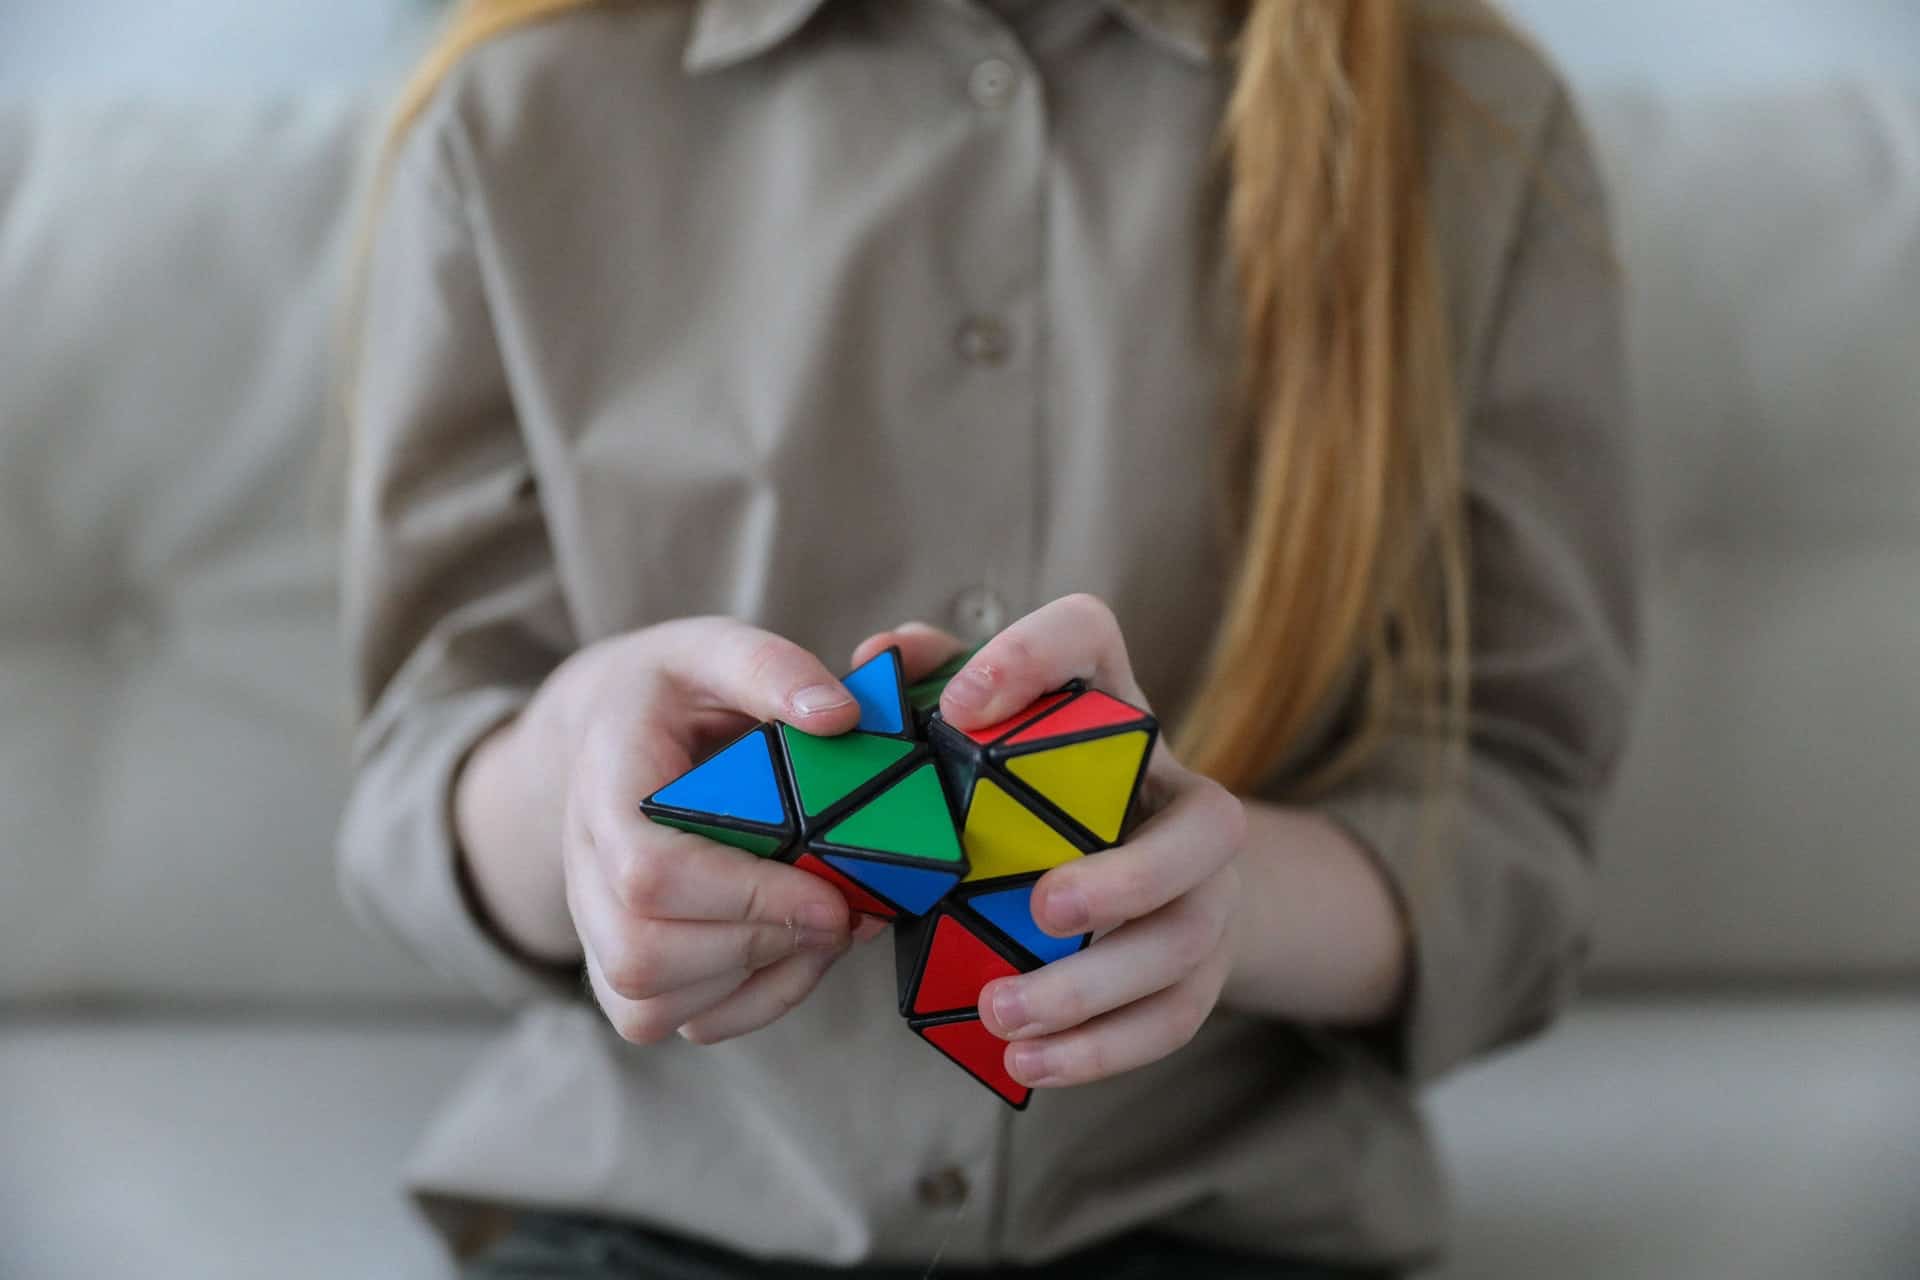 A woman solving a colorful 3D puzzle. 